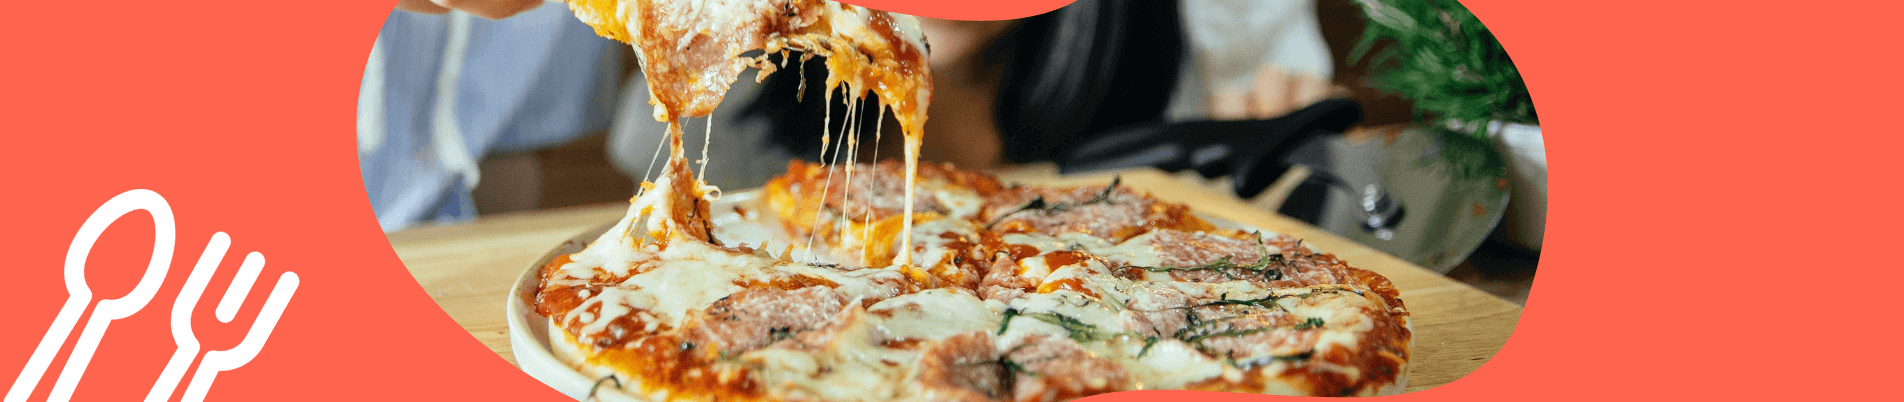 Rodízio de Pizza em Águas Claras: 5 Pizzarias para comer à vontade!